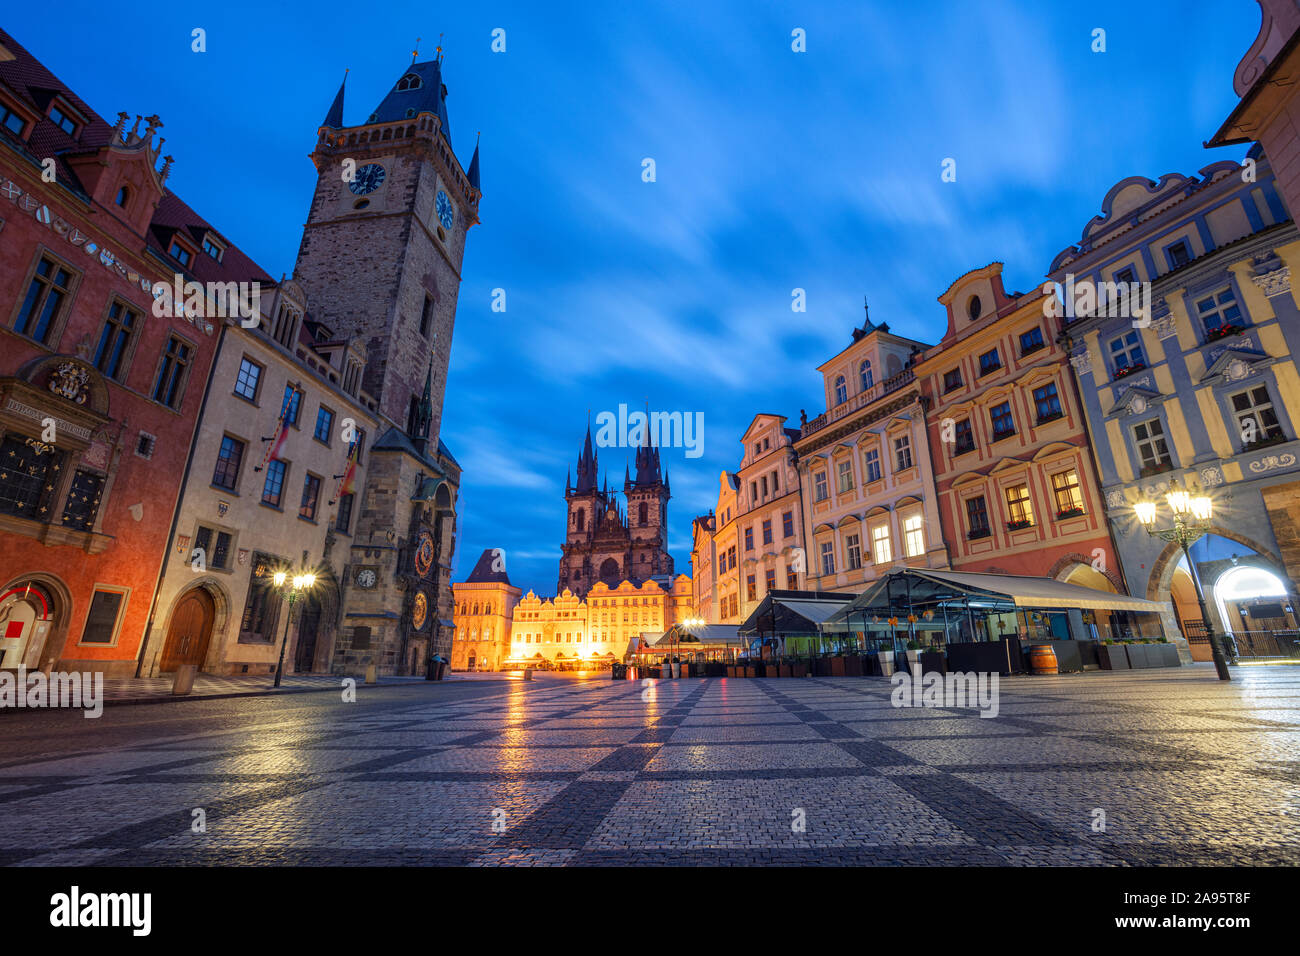 In Prag in der Tschechischen Republik. Stadtbild Bild des berühmten Altstädter Ring mit der Astronomische Uhr in Prag und Altes Rathaus während der Dämmerung blaue Stunde. Stockfoto